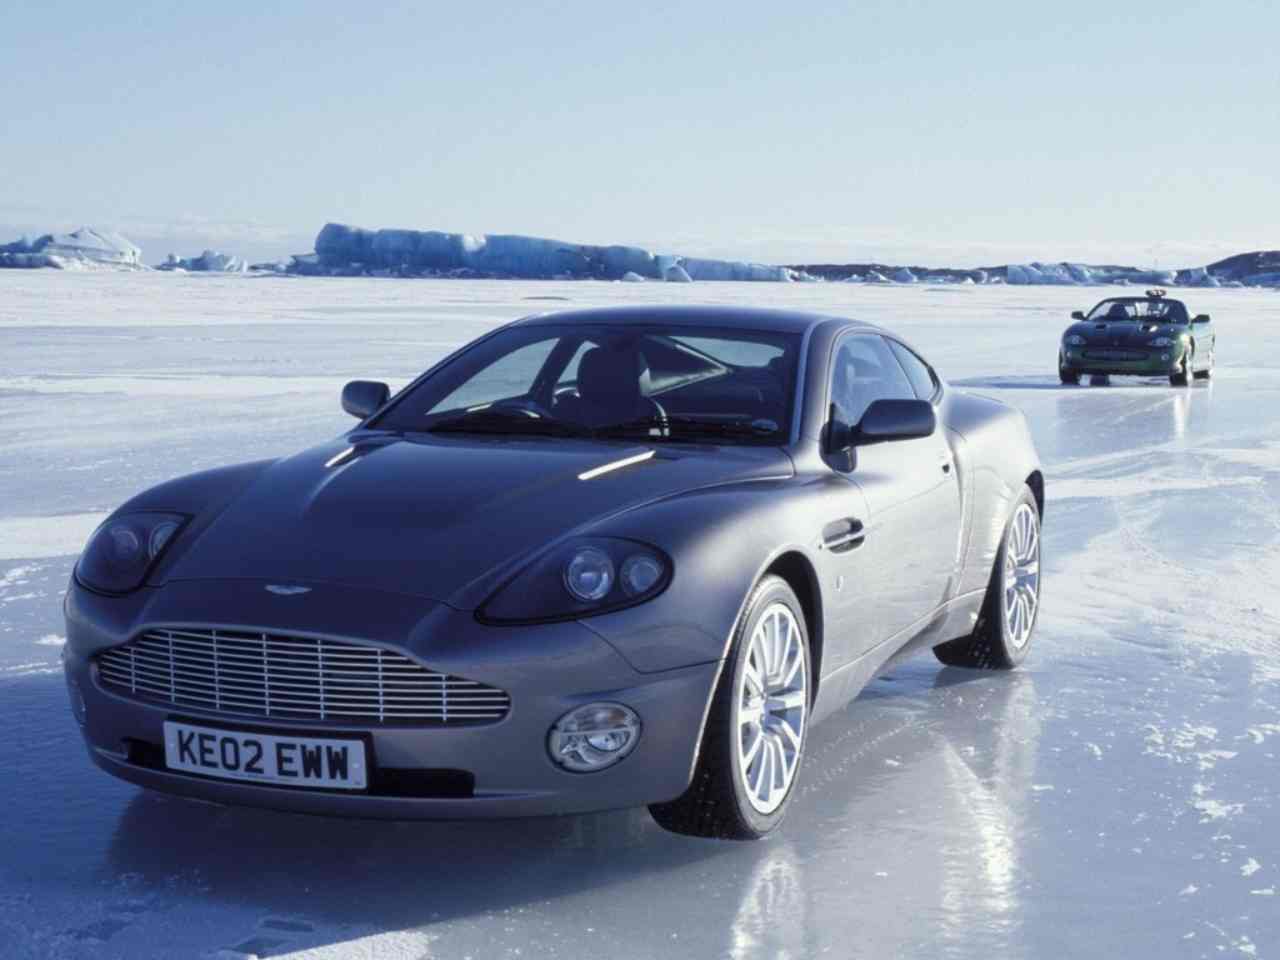 L'Aston Martin Vanquish vista in "007 - La morte può attendere"